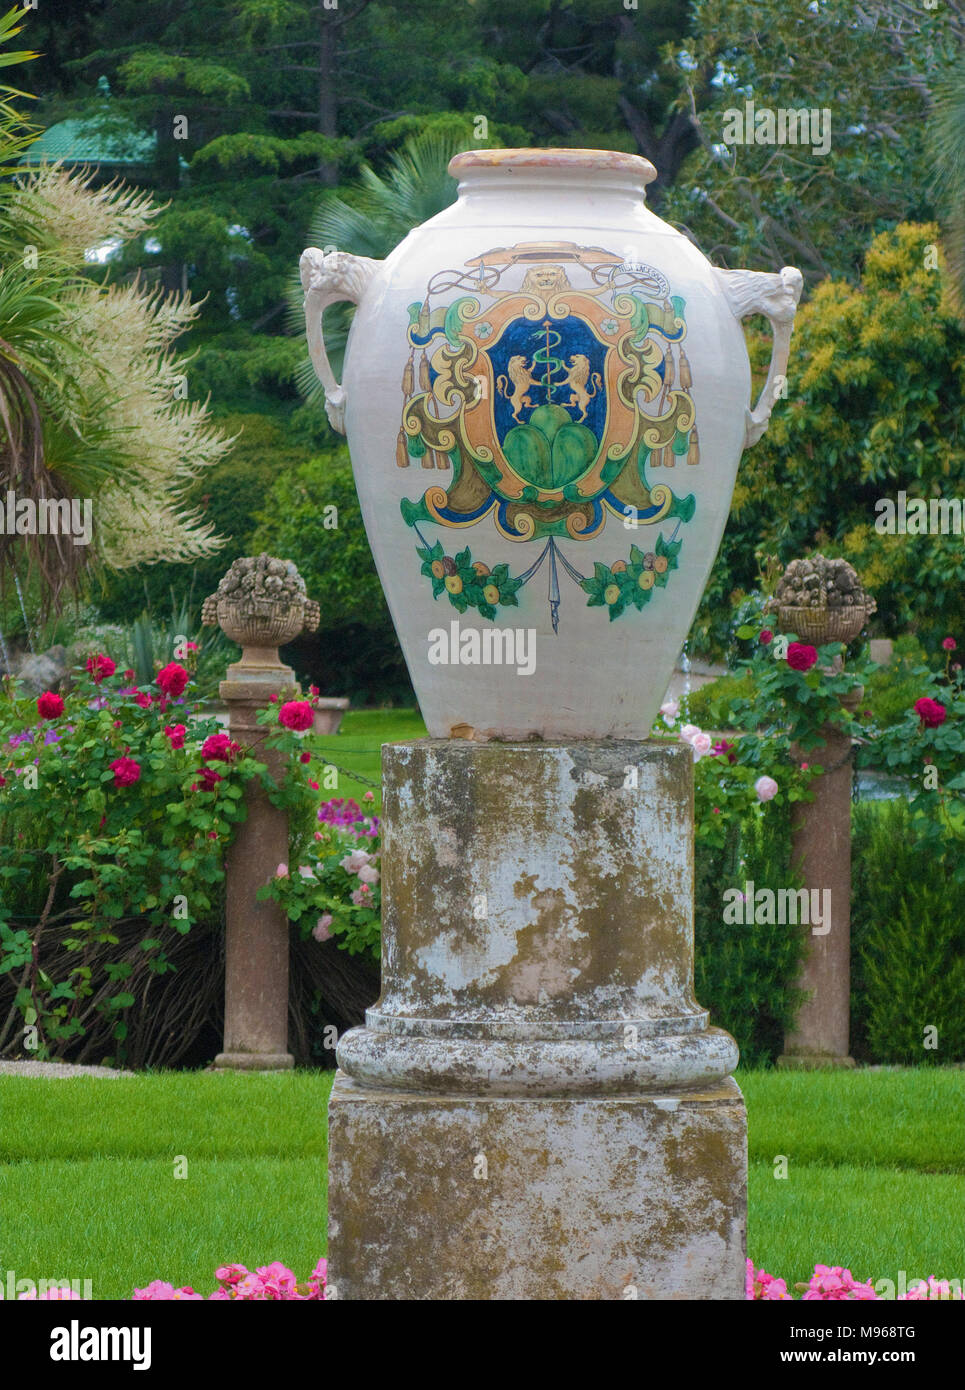 Keramik Vase mit Crest im Garten der Villa Ephrussi de Rothschild, Kap Ferrat, Süd Frankreich, Var, Côte d'Azur, Frankreich, Europa Stockfoto